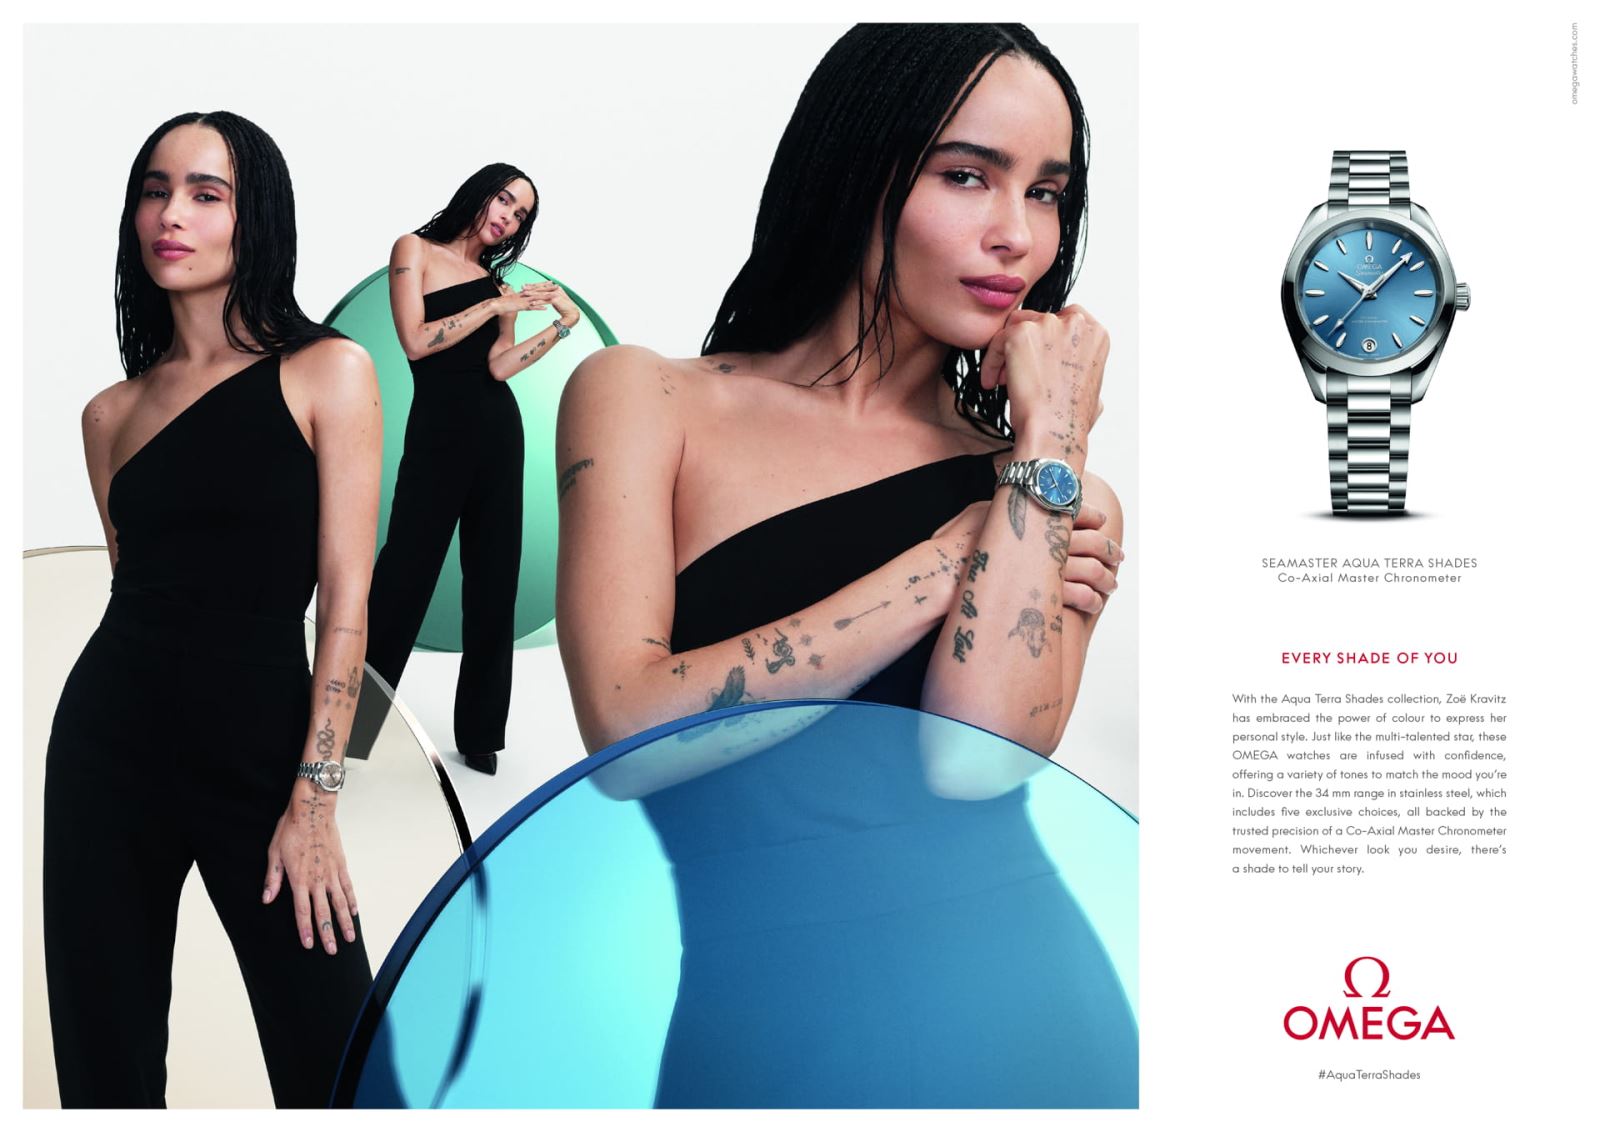 OMEGA ra mắt BST Aqua Terra Shades cùng các đại sứ thương hiệu Zoë Kravitz, Châu Đông Vũ và Eddie Redmayne